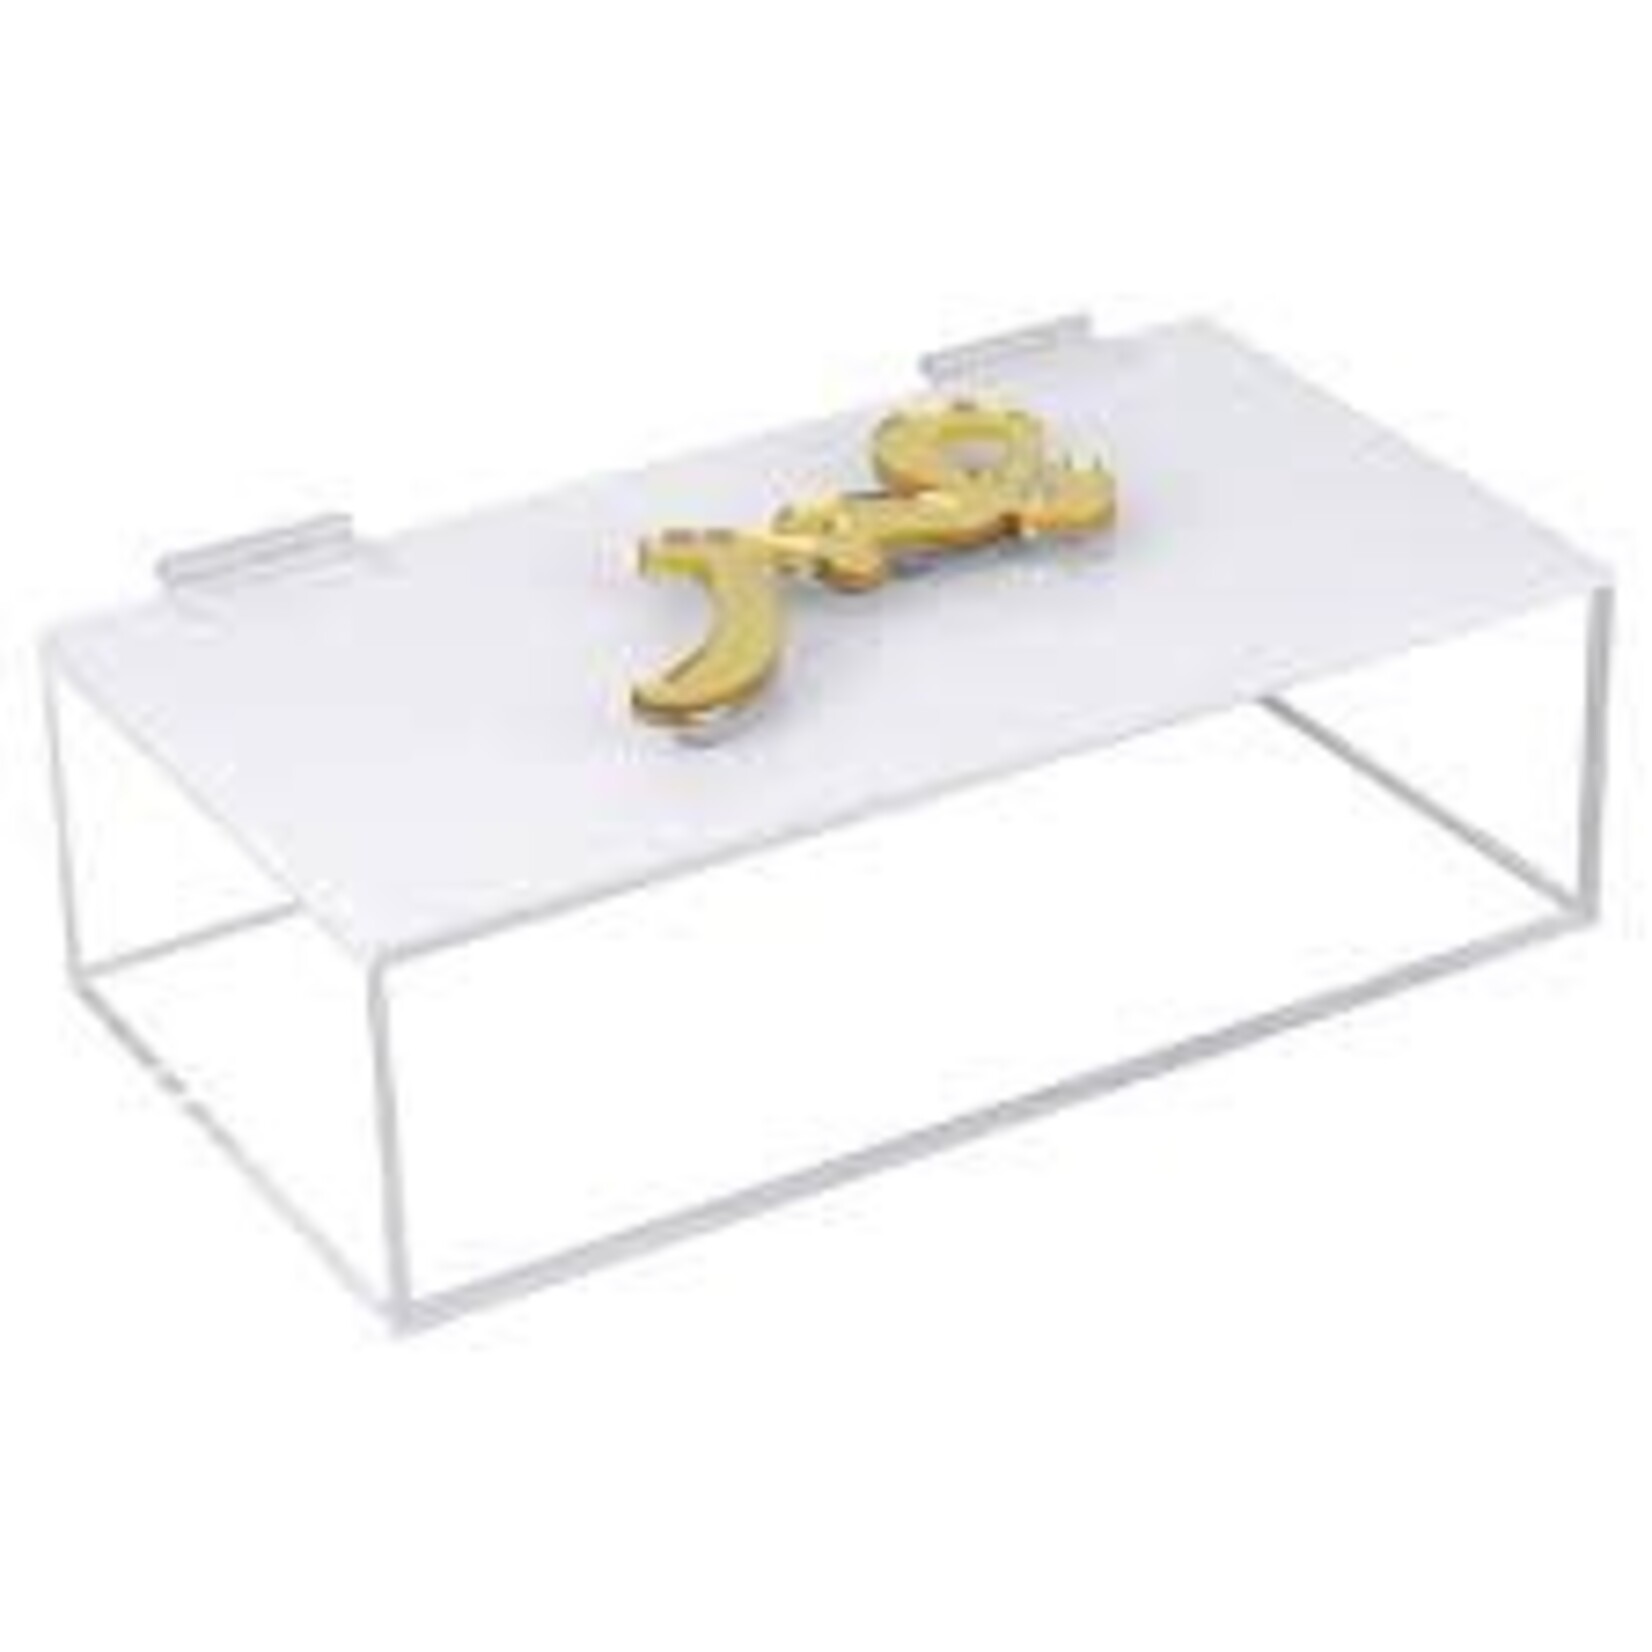 Lucite Multi Purpose Shabbos Box - Large - Gold